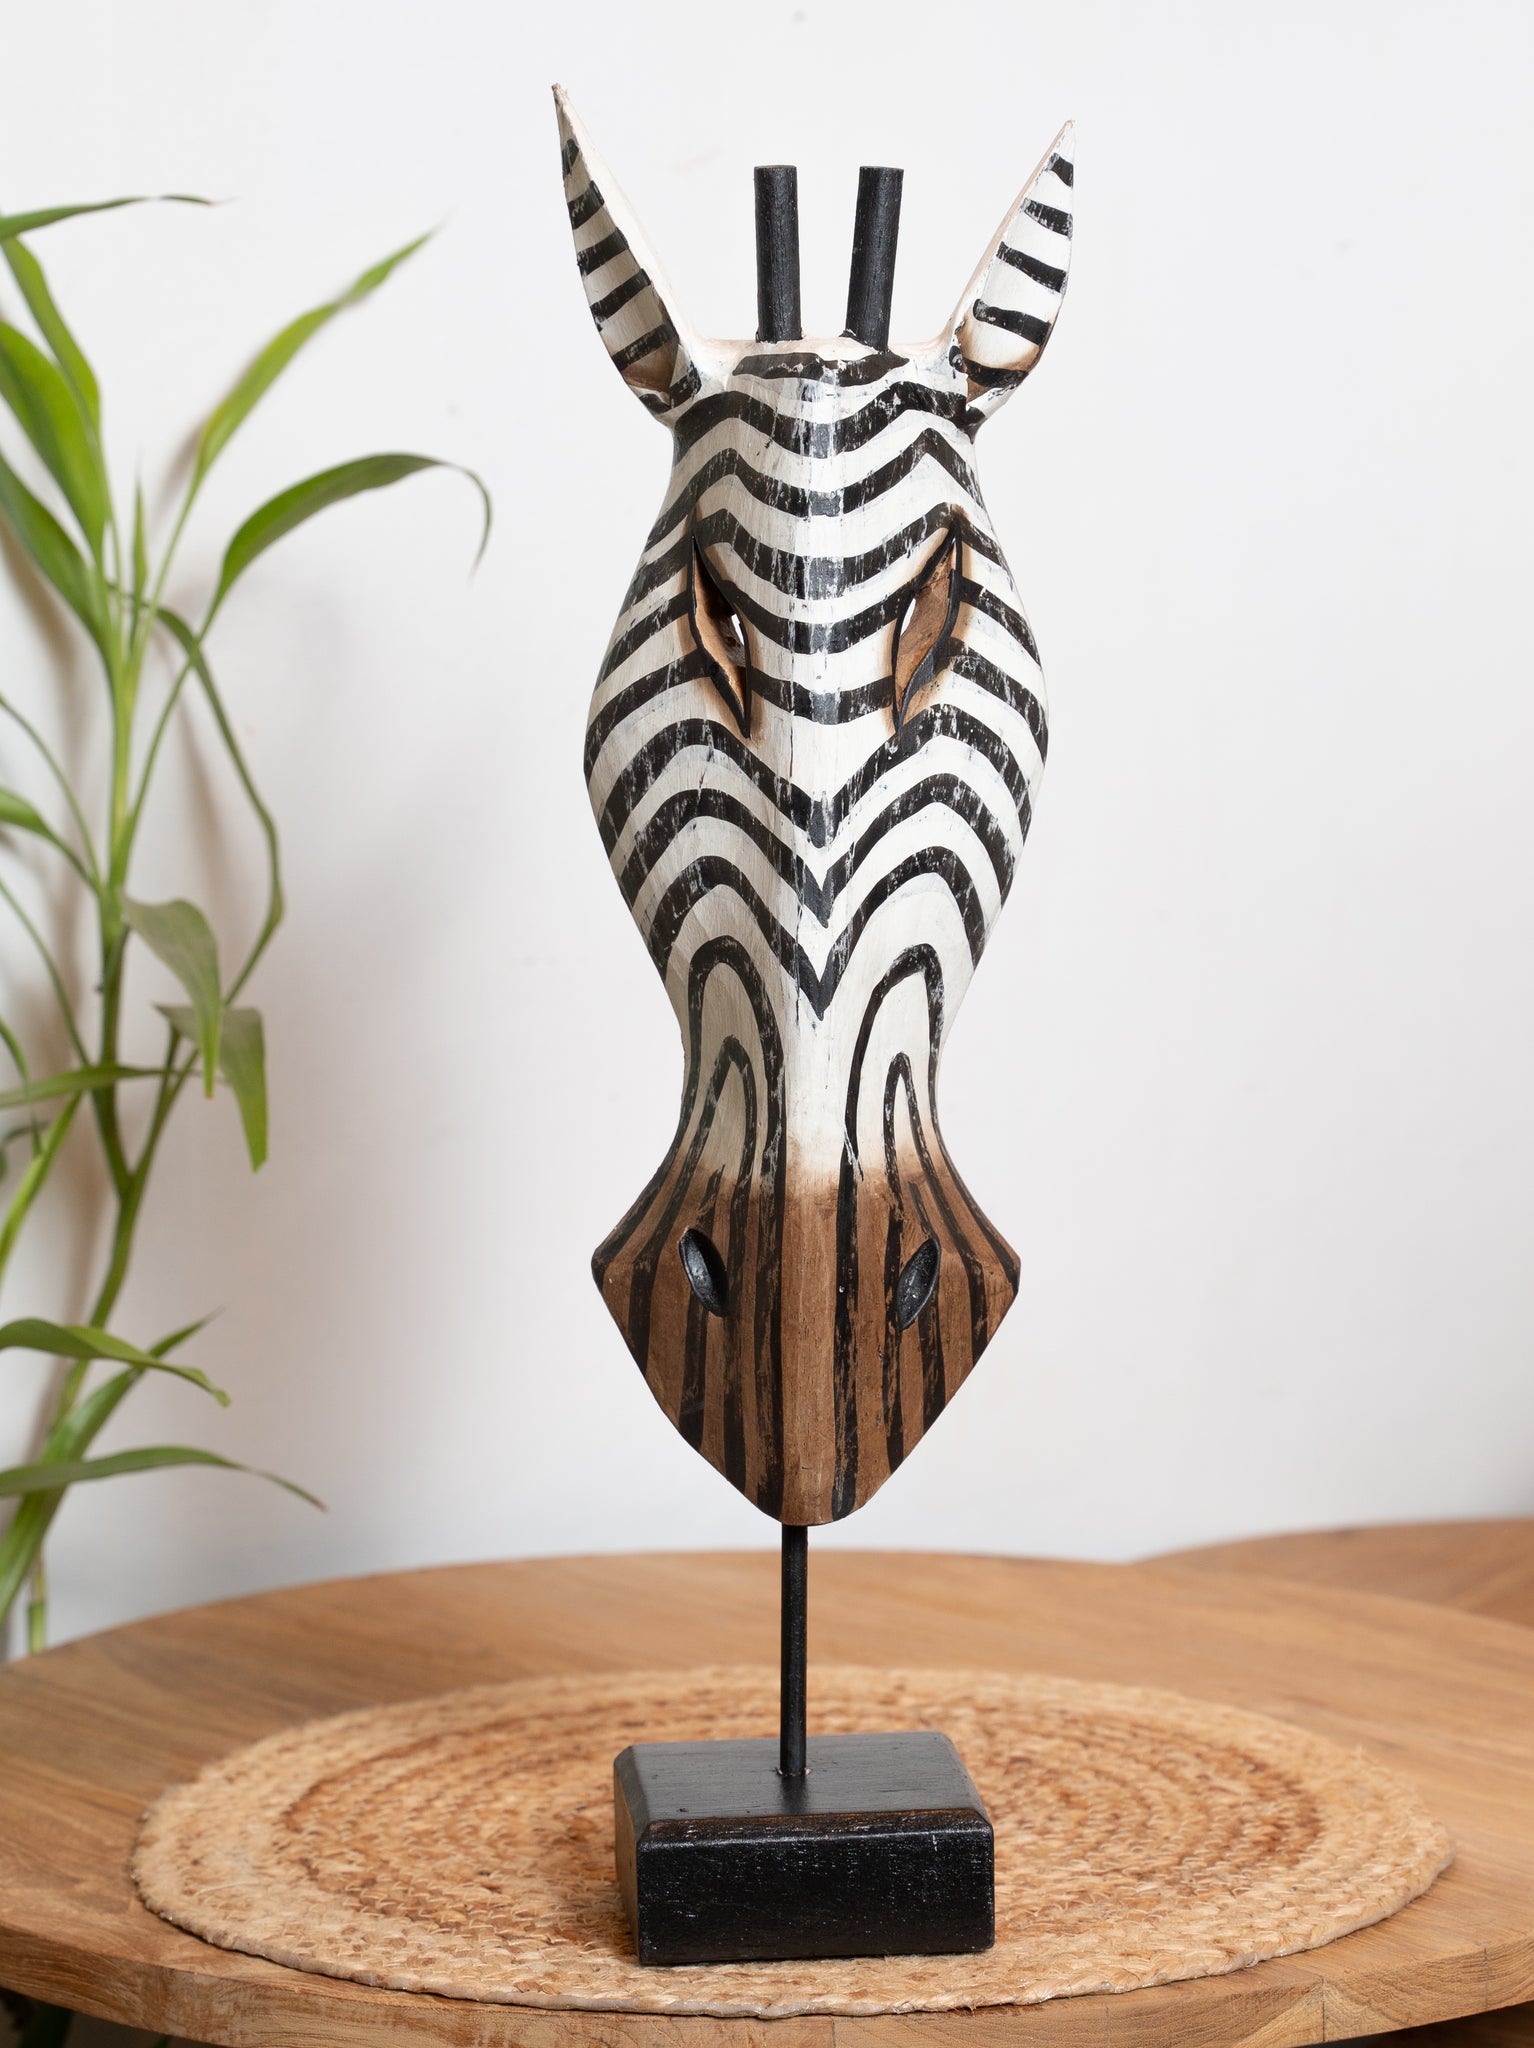 Zebra Mask - Large